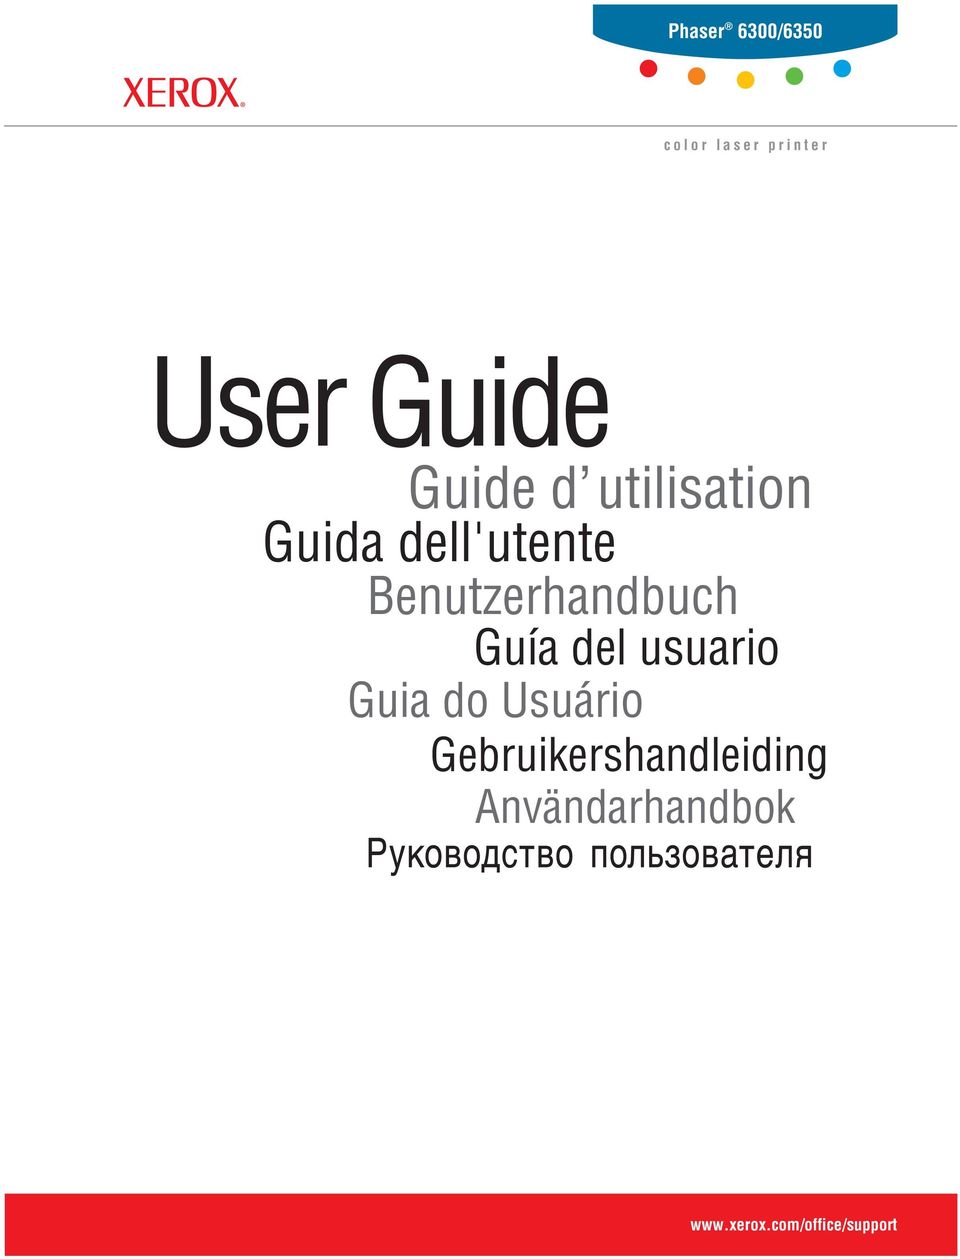 Benutzerhandbuch Guía del usuario Guia do Usuário